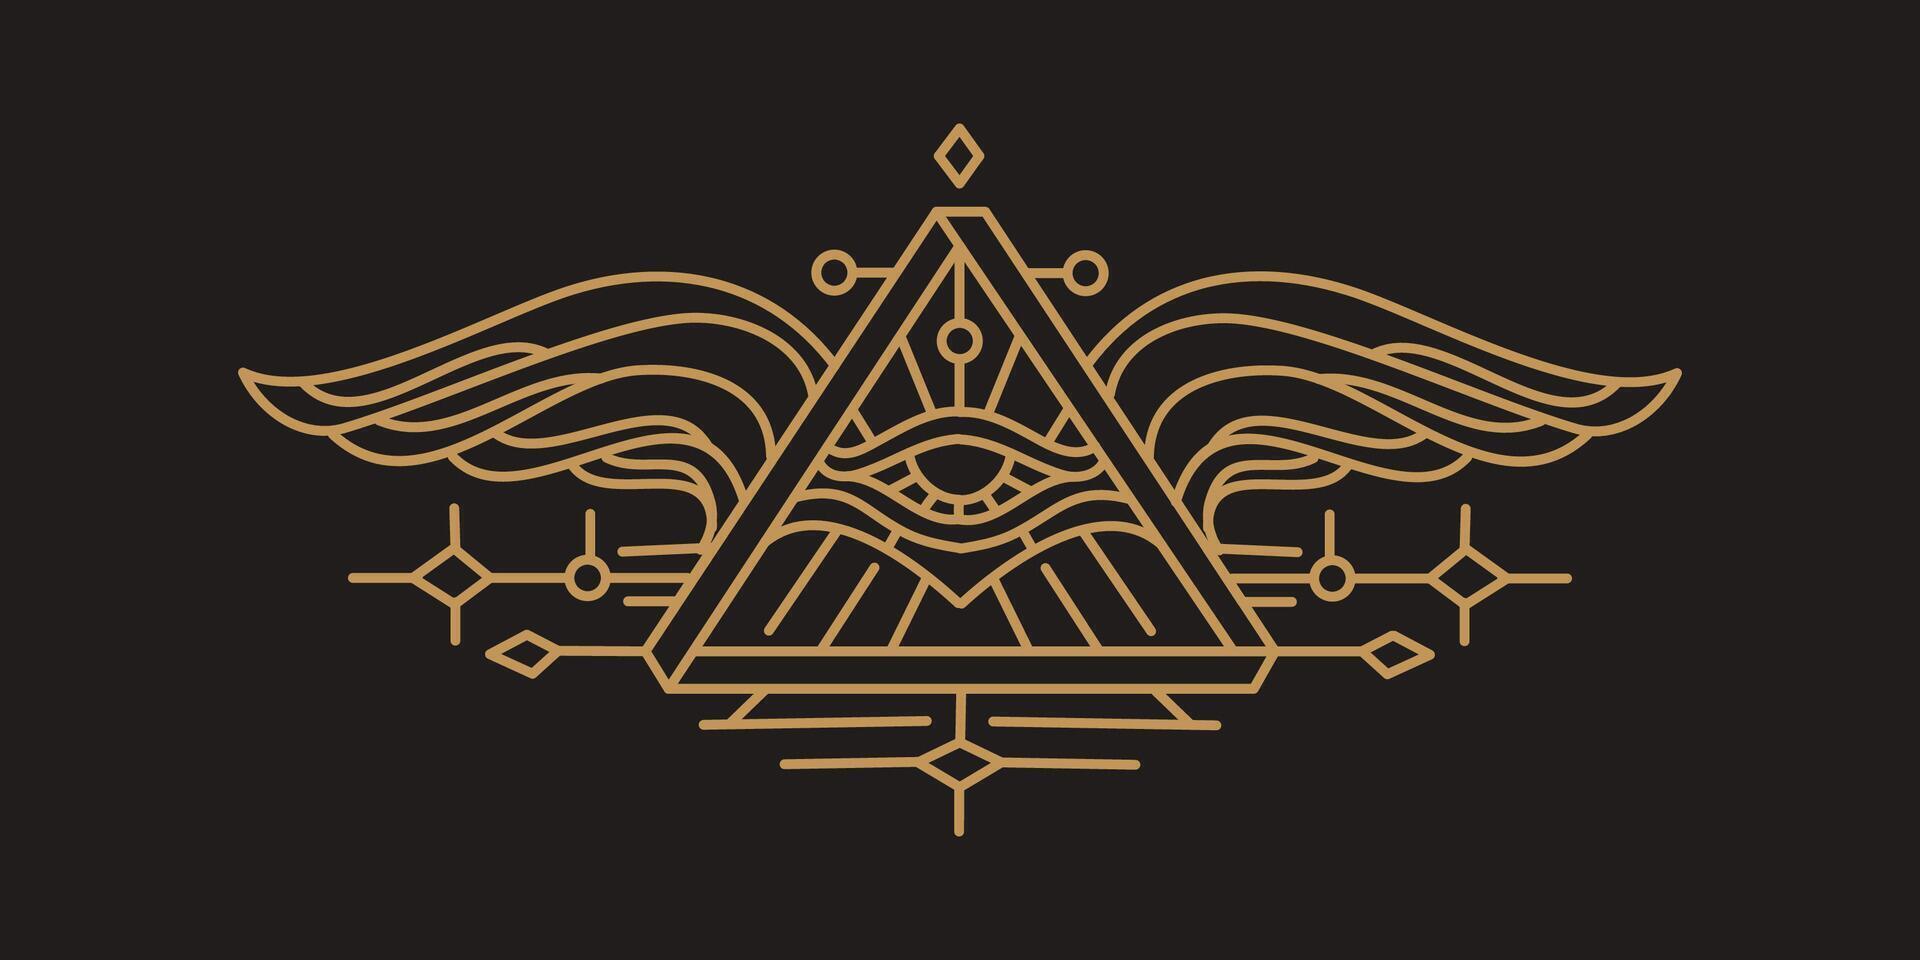 eye of horus with Sacred scarab wings wall art design in outline design. egytian art design illustration wallpaper vector